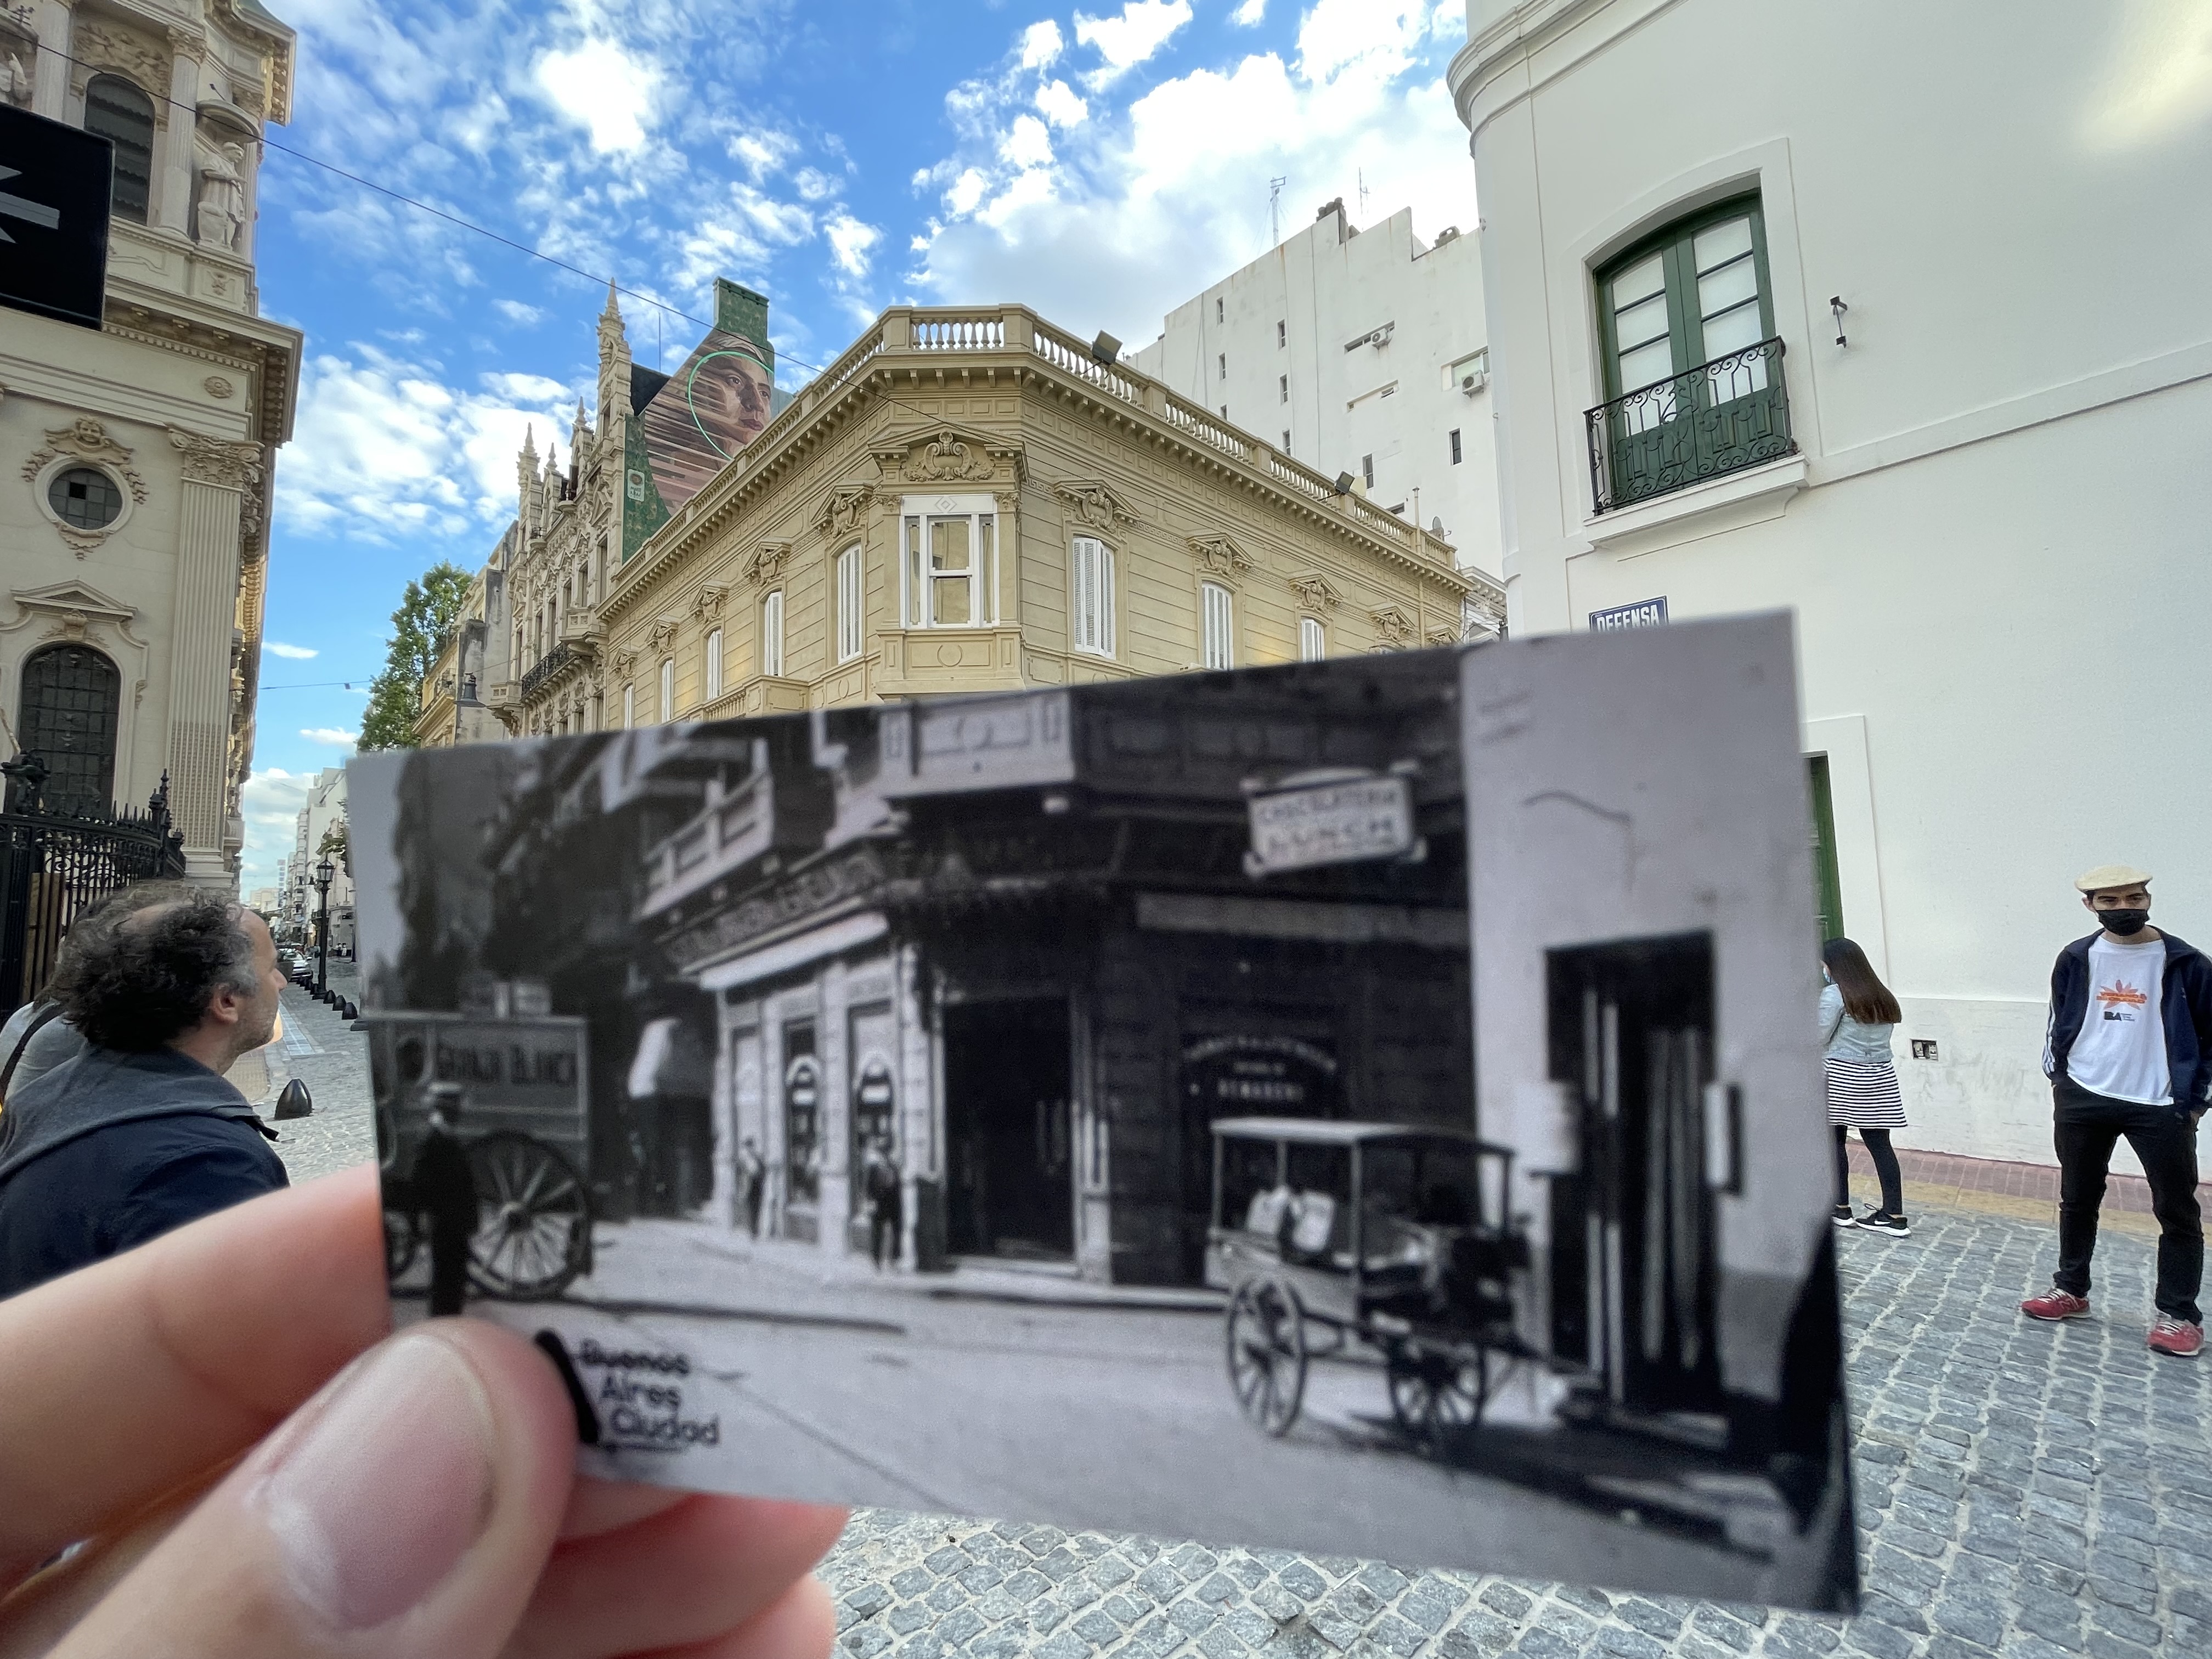 Descubre la historia de Buenos Aires: Así vivimos la visita guiada por el casco histórico de la Ciudad